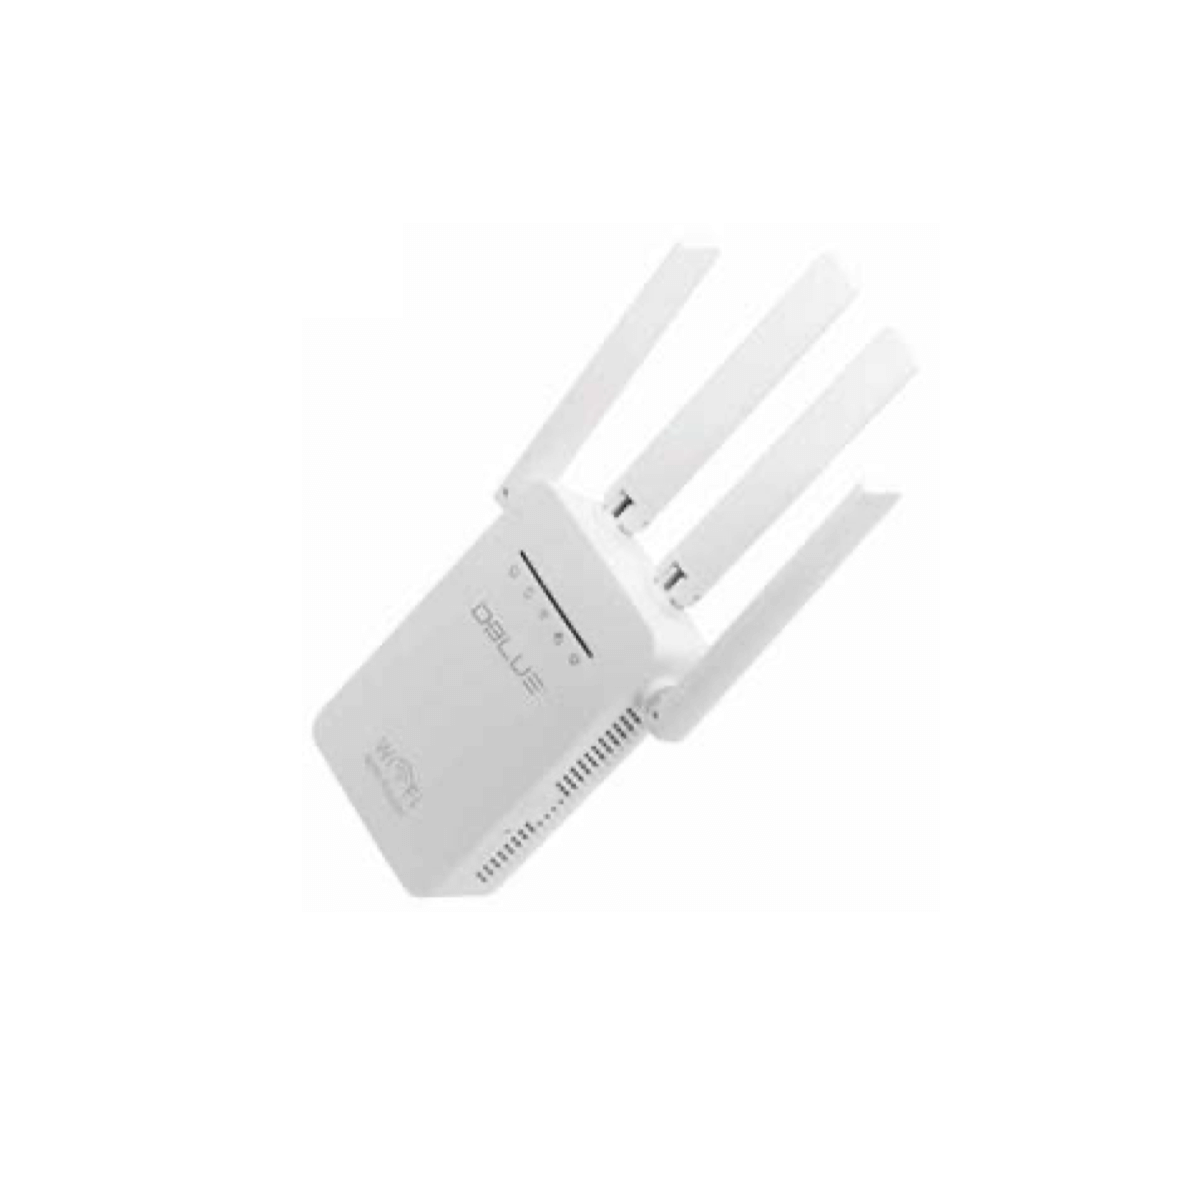 Amplificador Repetidor Señal Wifi 300 Mbps Con 4 Antenas 03-DBRW302